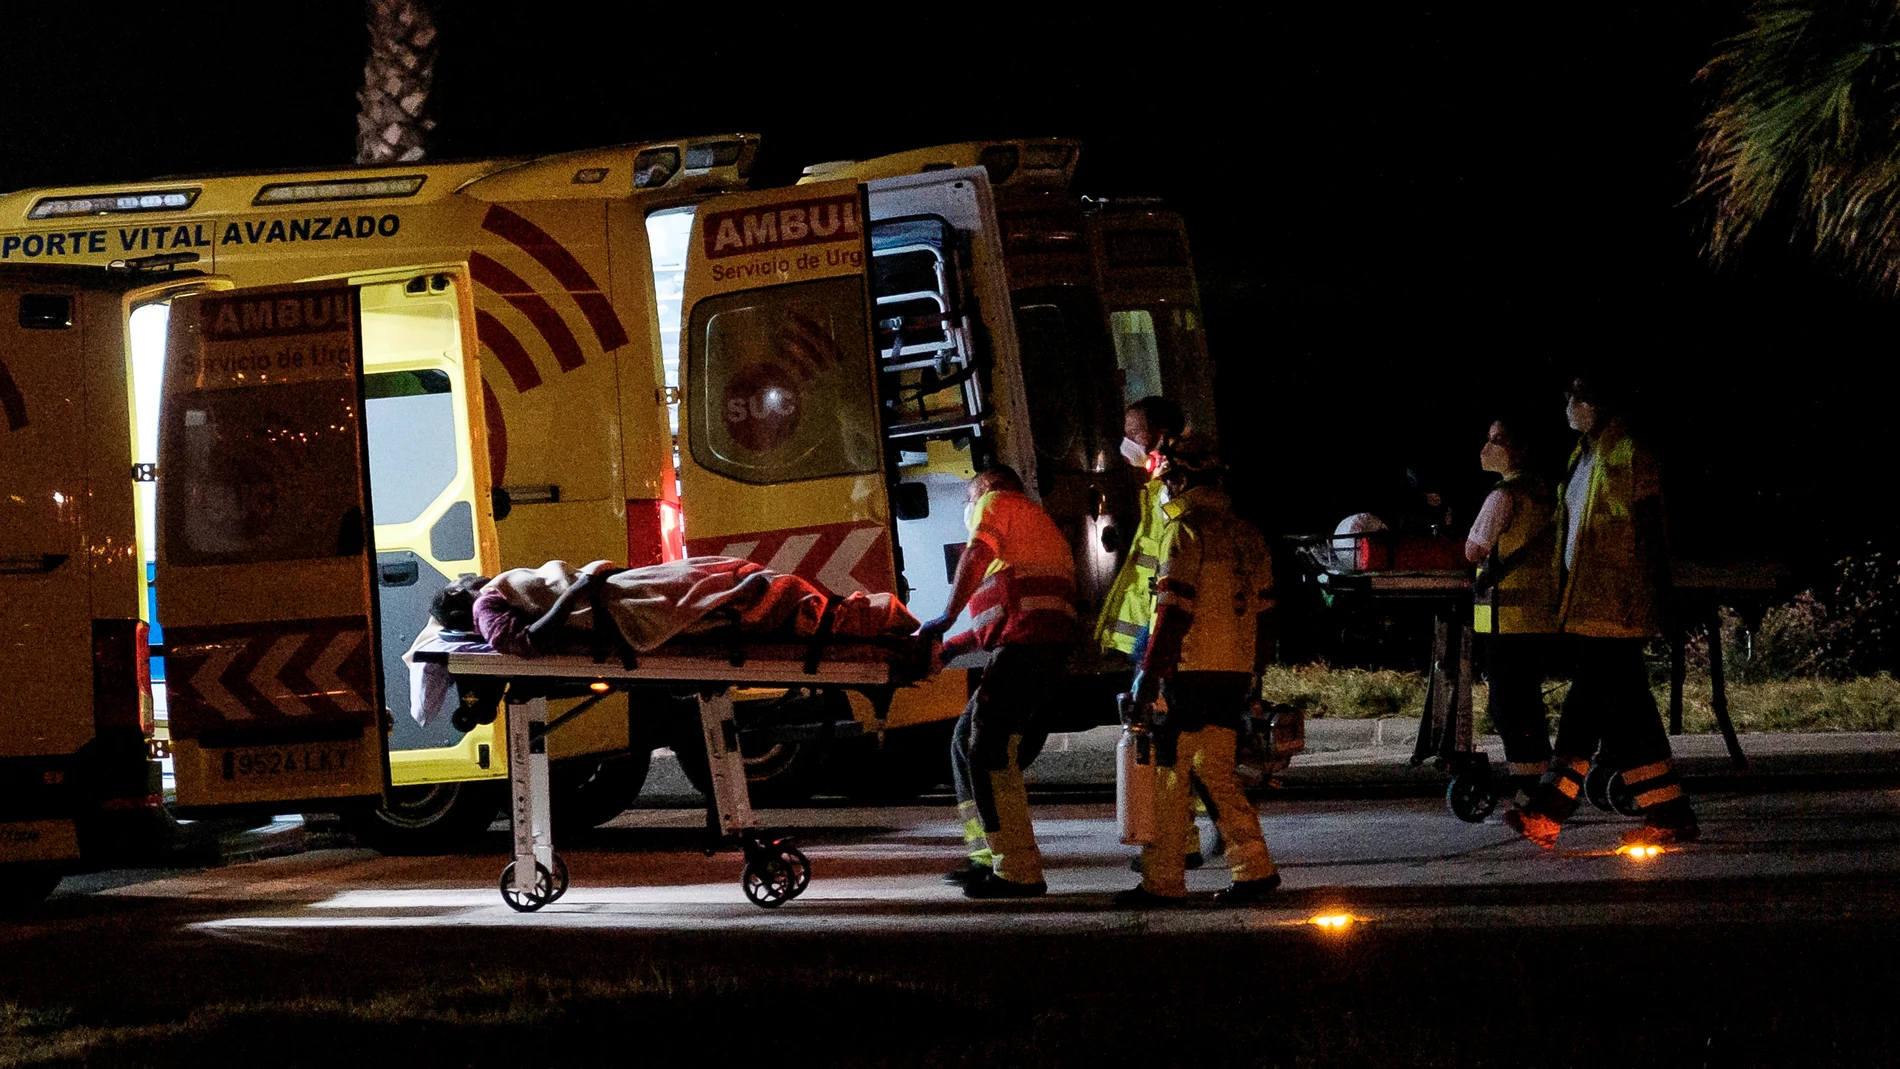 Rozando las 0.00 horas llegó un helicóptero del servicio de búsqueda y rescate (SAR) del Ejército del Aire al helipuerto del Hospital Doctor Negrín de Las Palmas de Gran Canaria